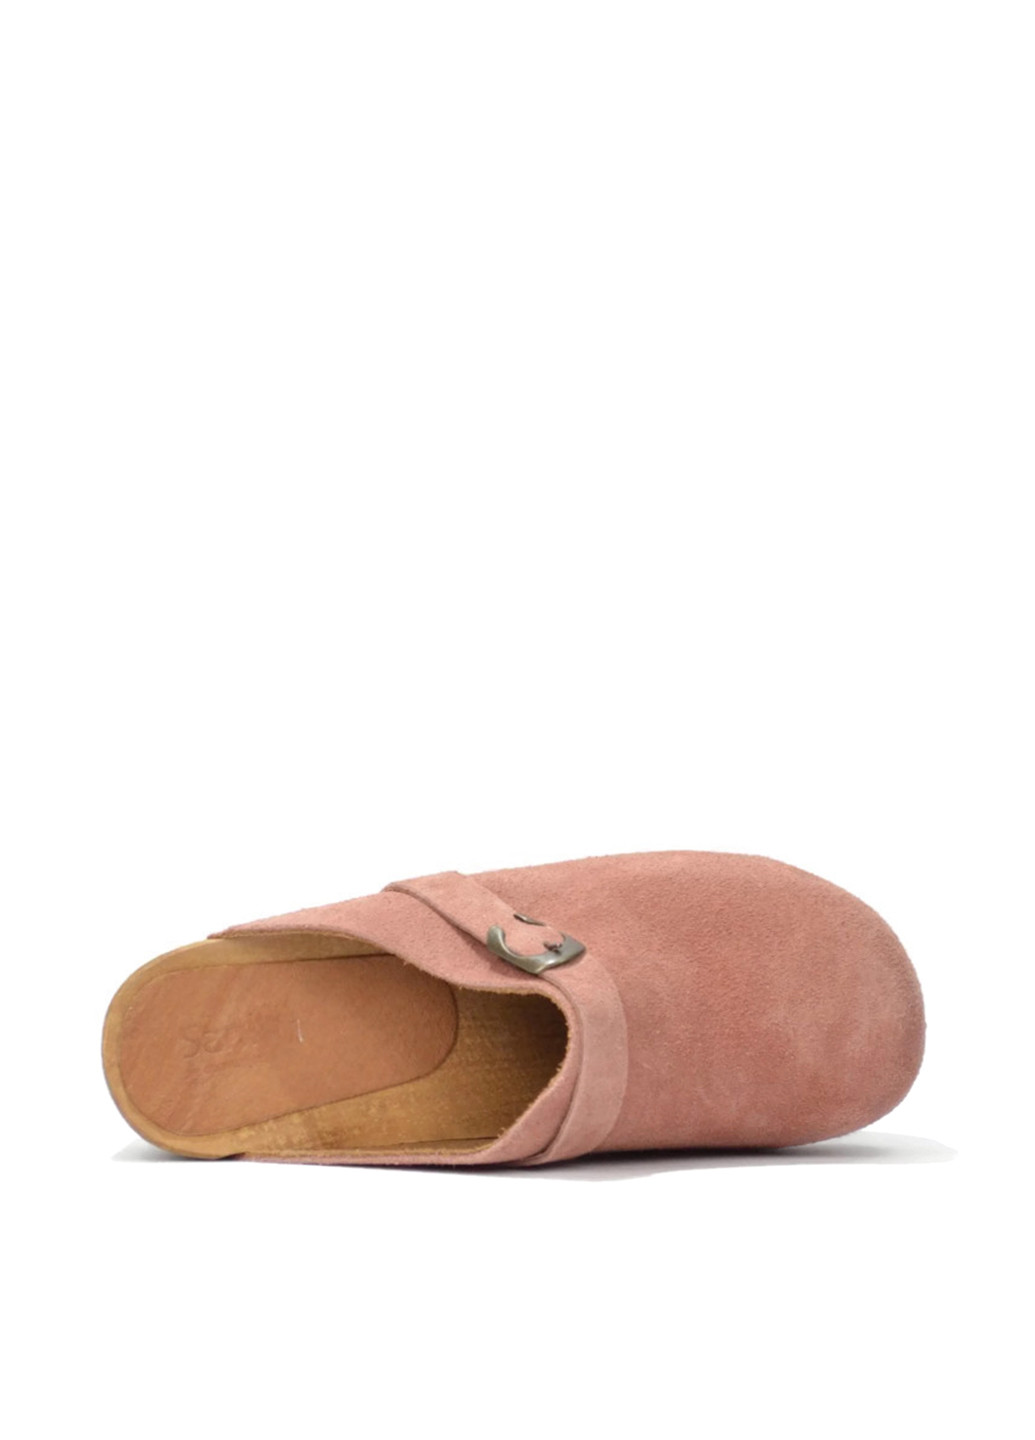 Розовые сабо Sanita на низком каблуке с пряжкой